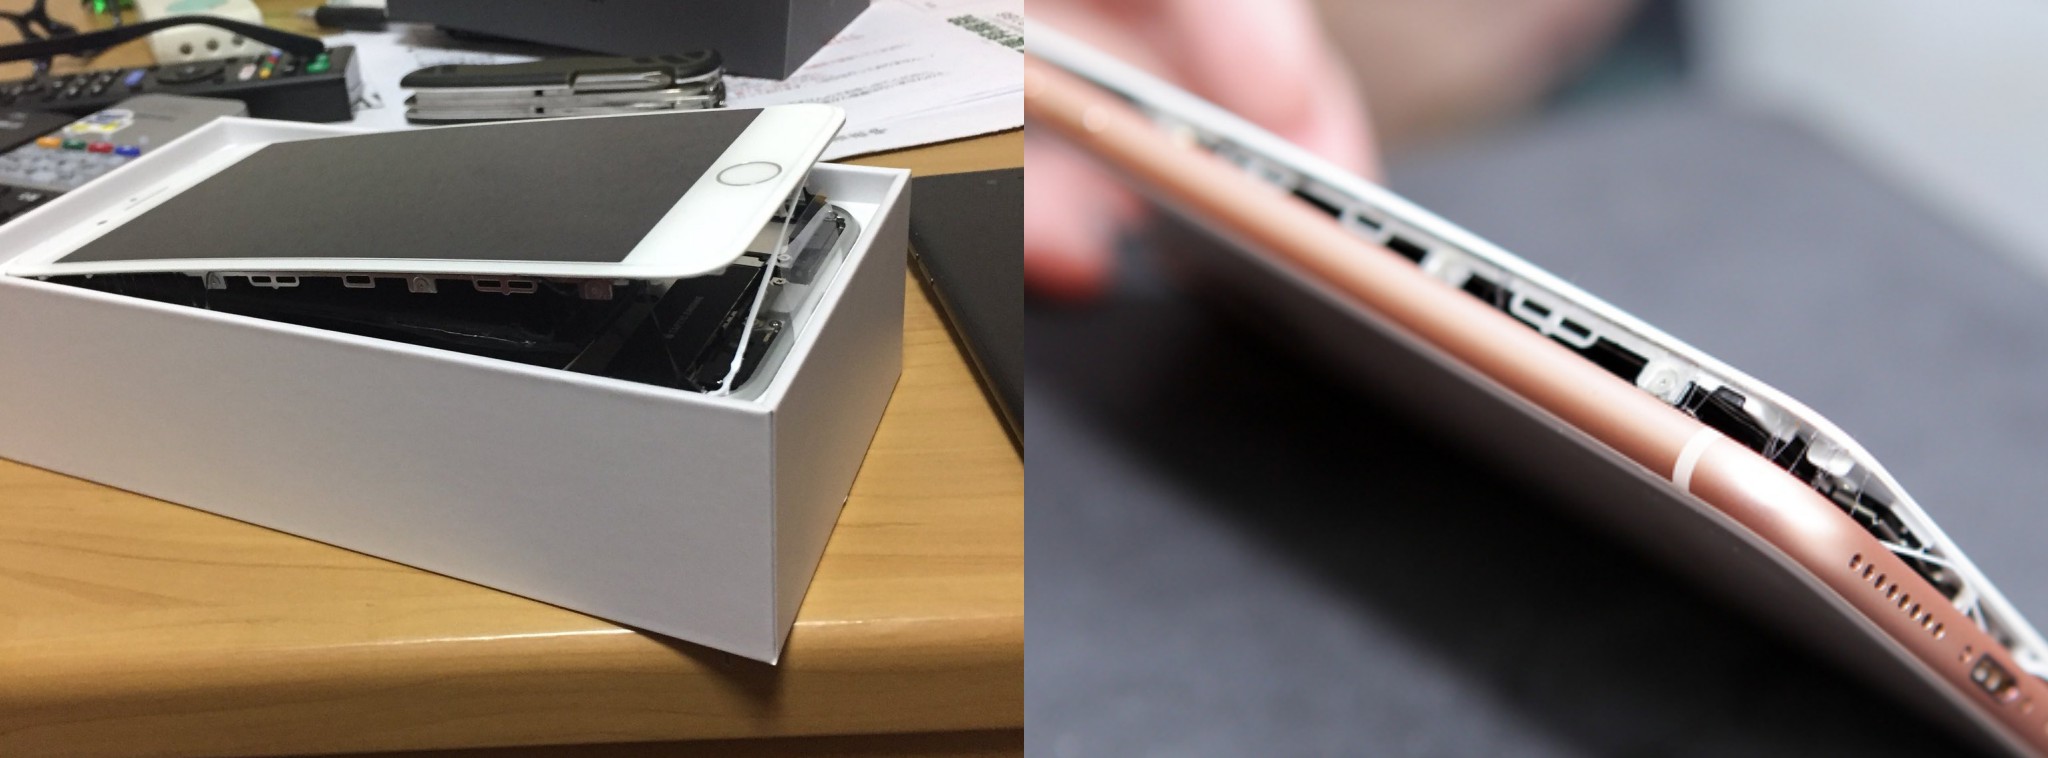 Apple đang điều tra 2 vụ pin iPhone 8 Plus bị phồng